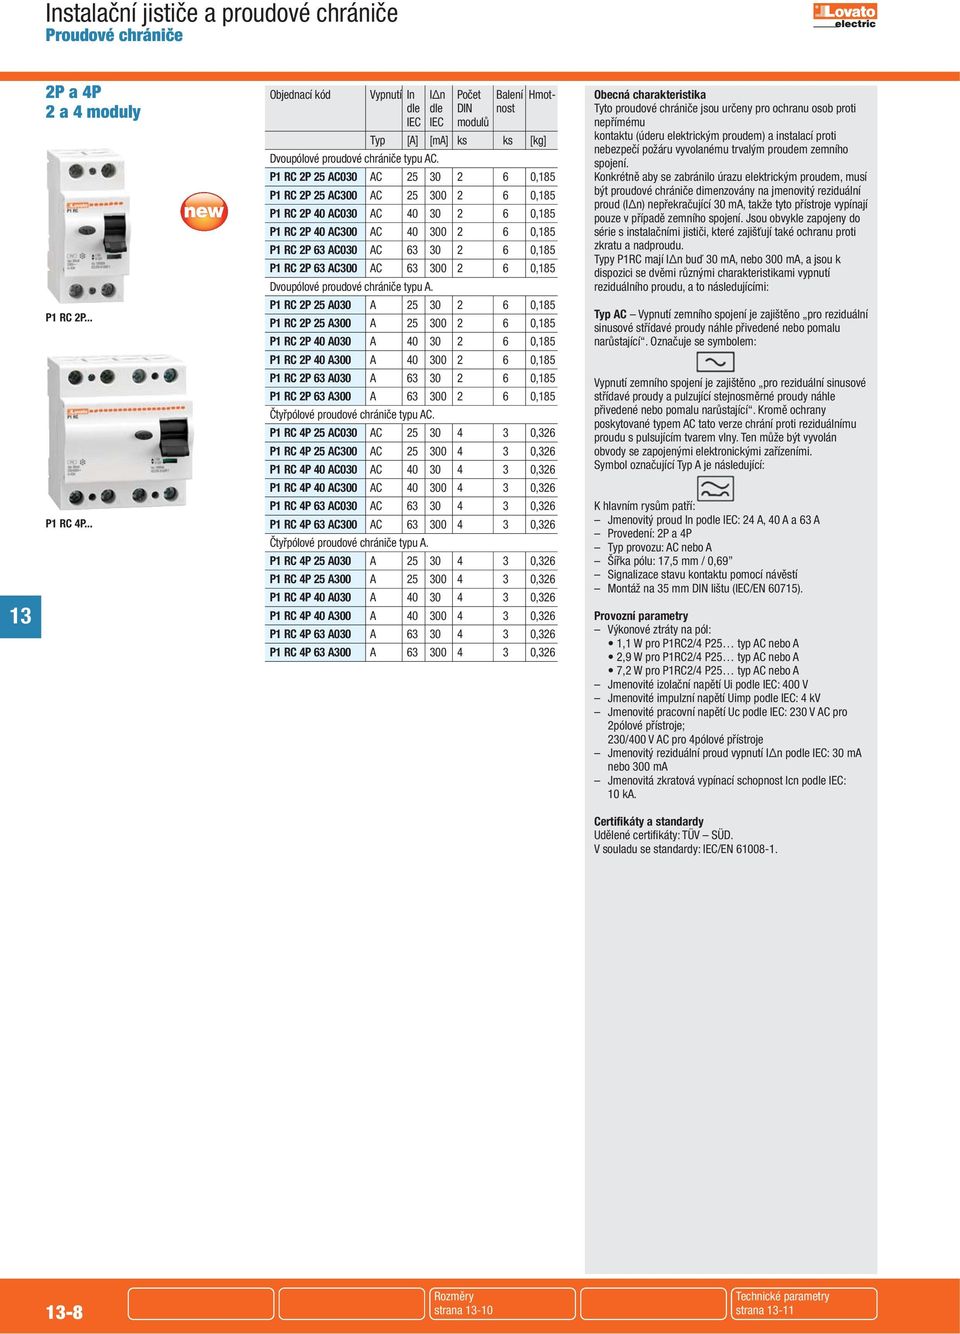 AC300 AC 63 300 2 6 0,185 Dvoupólové proudové chrániče typu A.